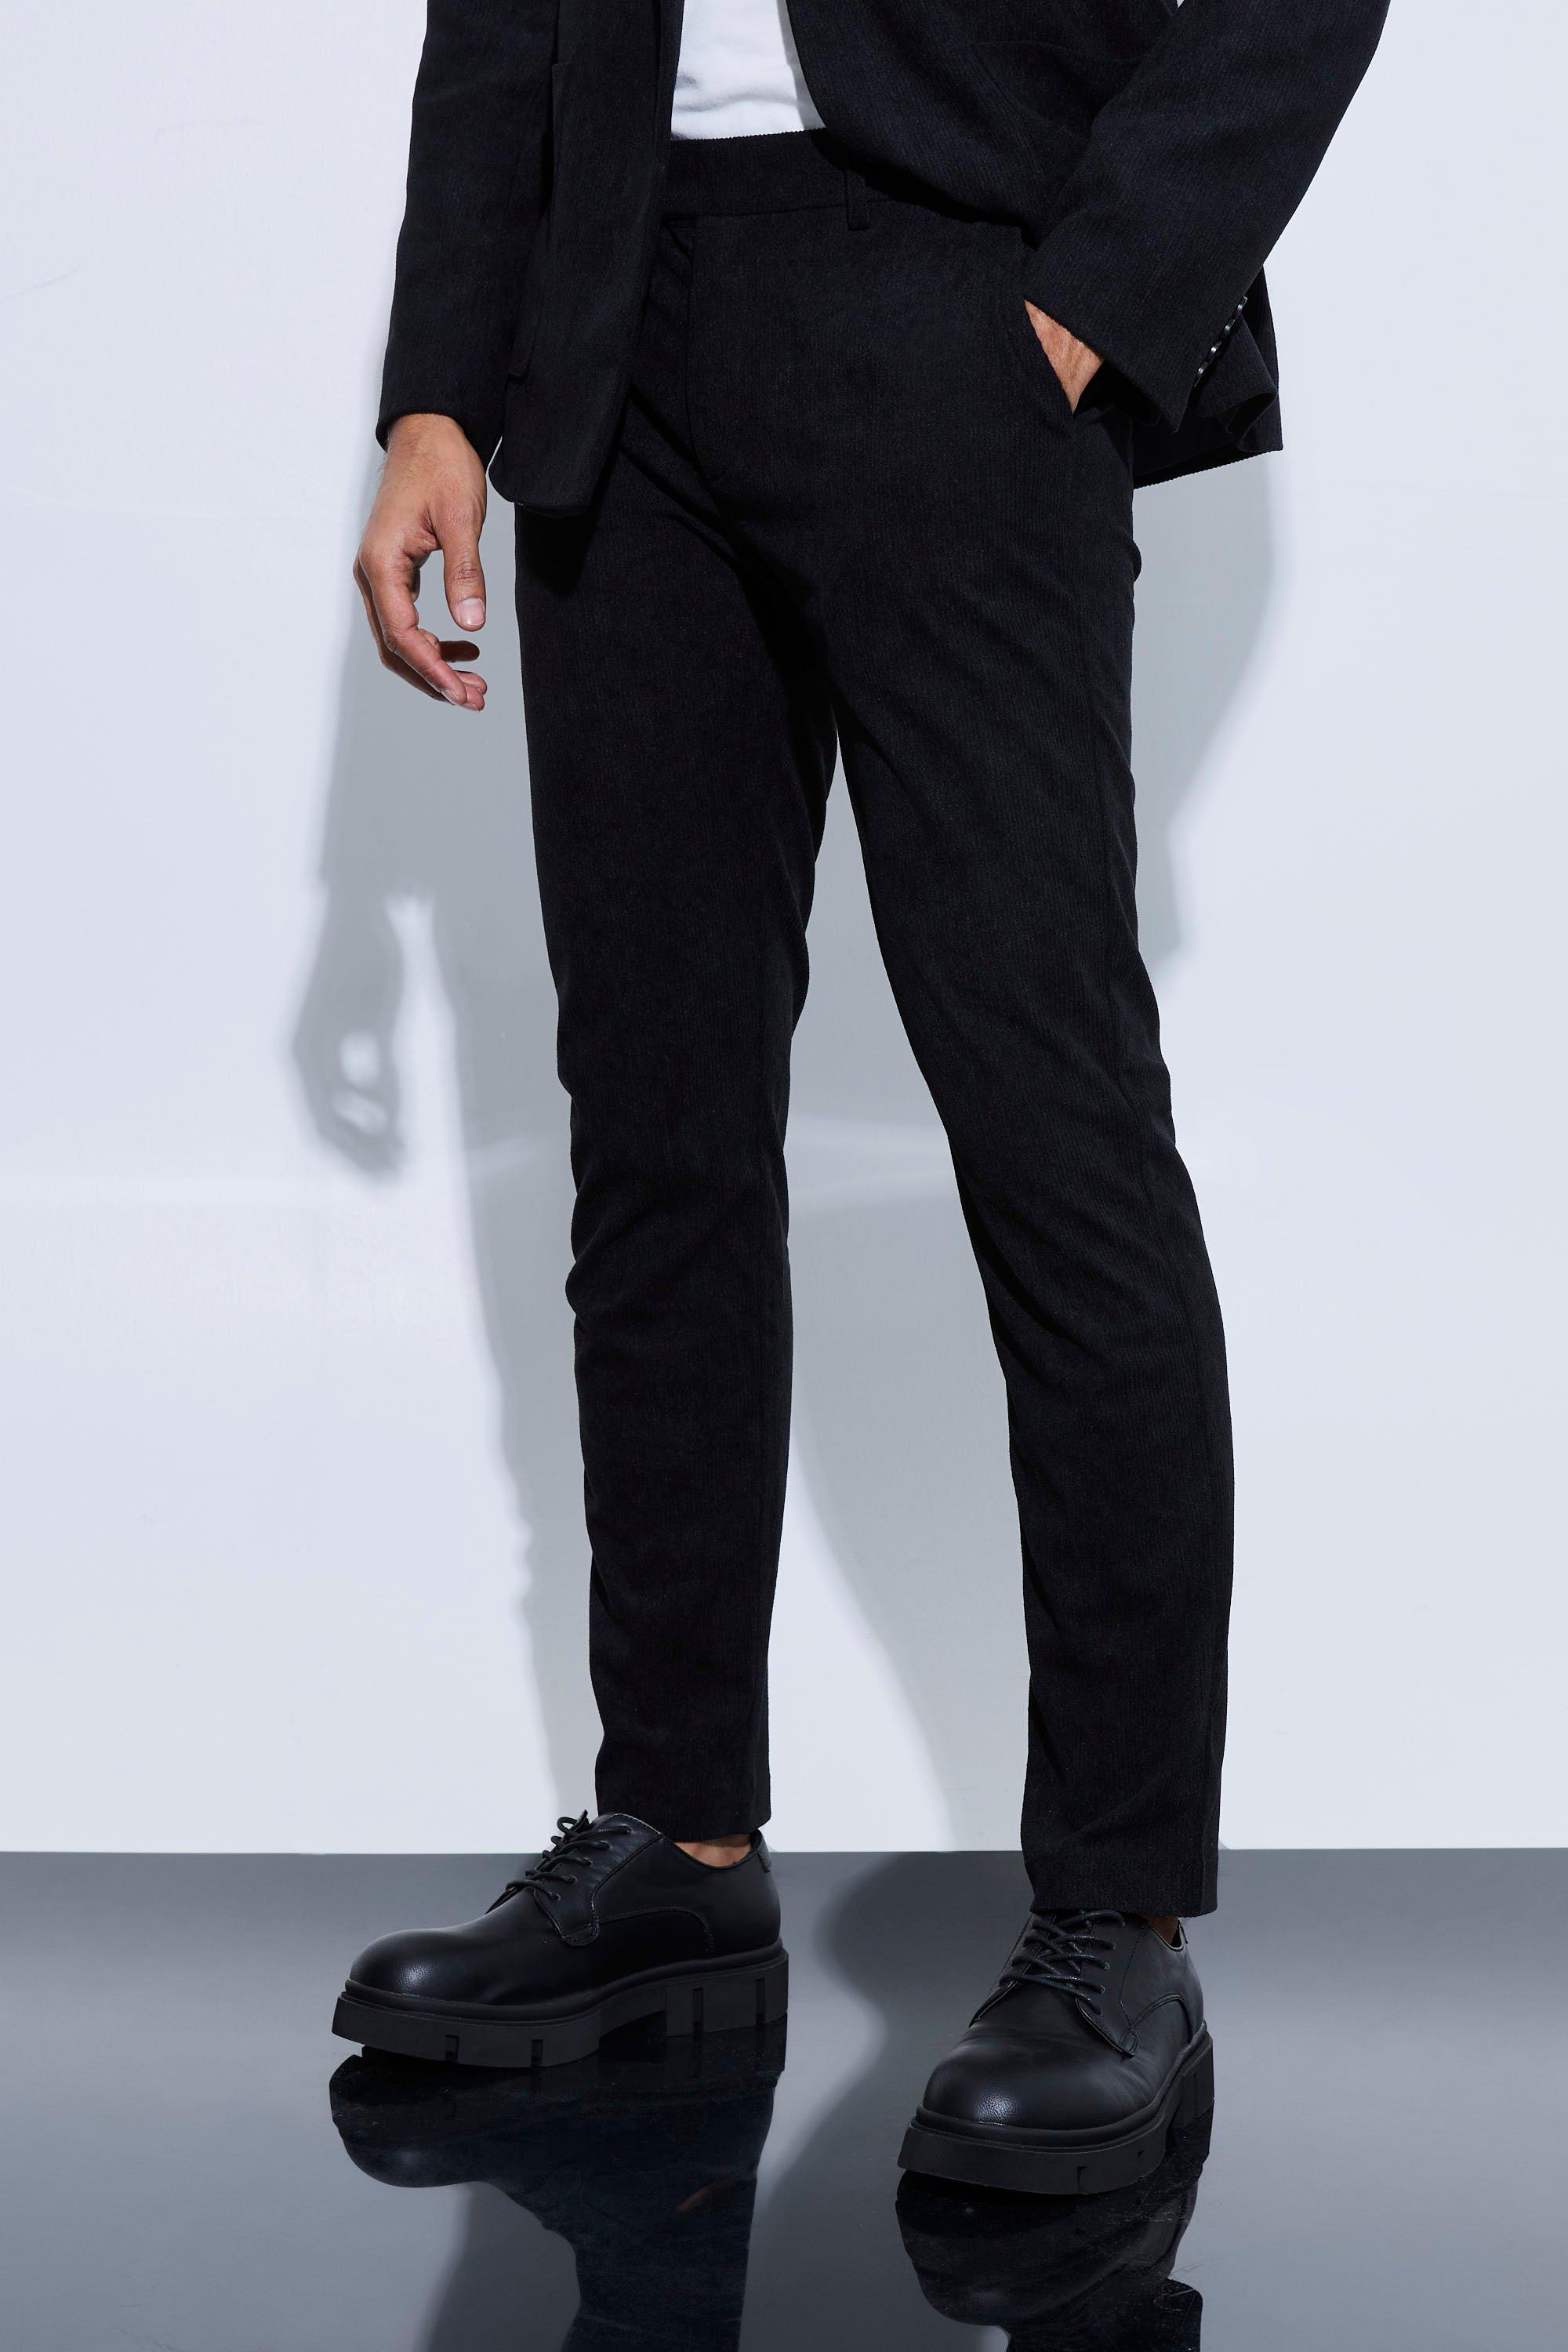 pantalon de tailleur skinny homme - noir - 30, noir